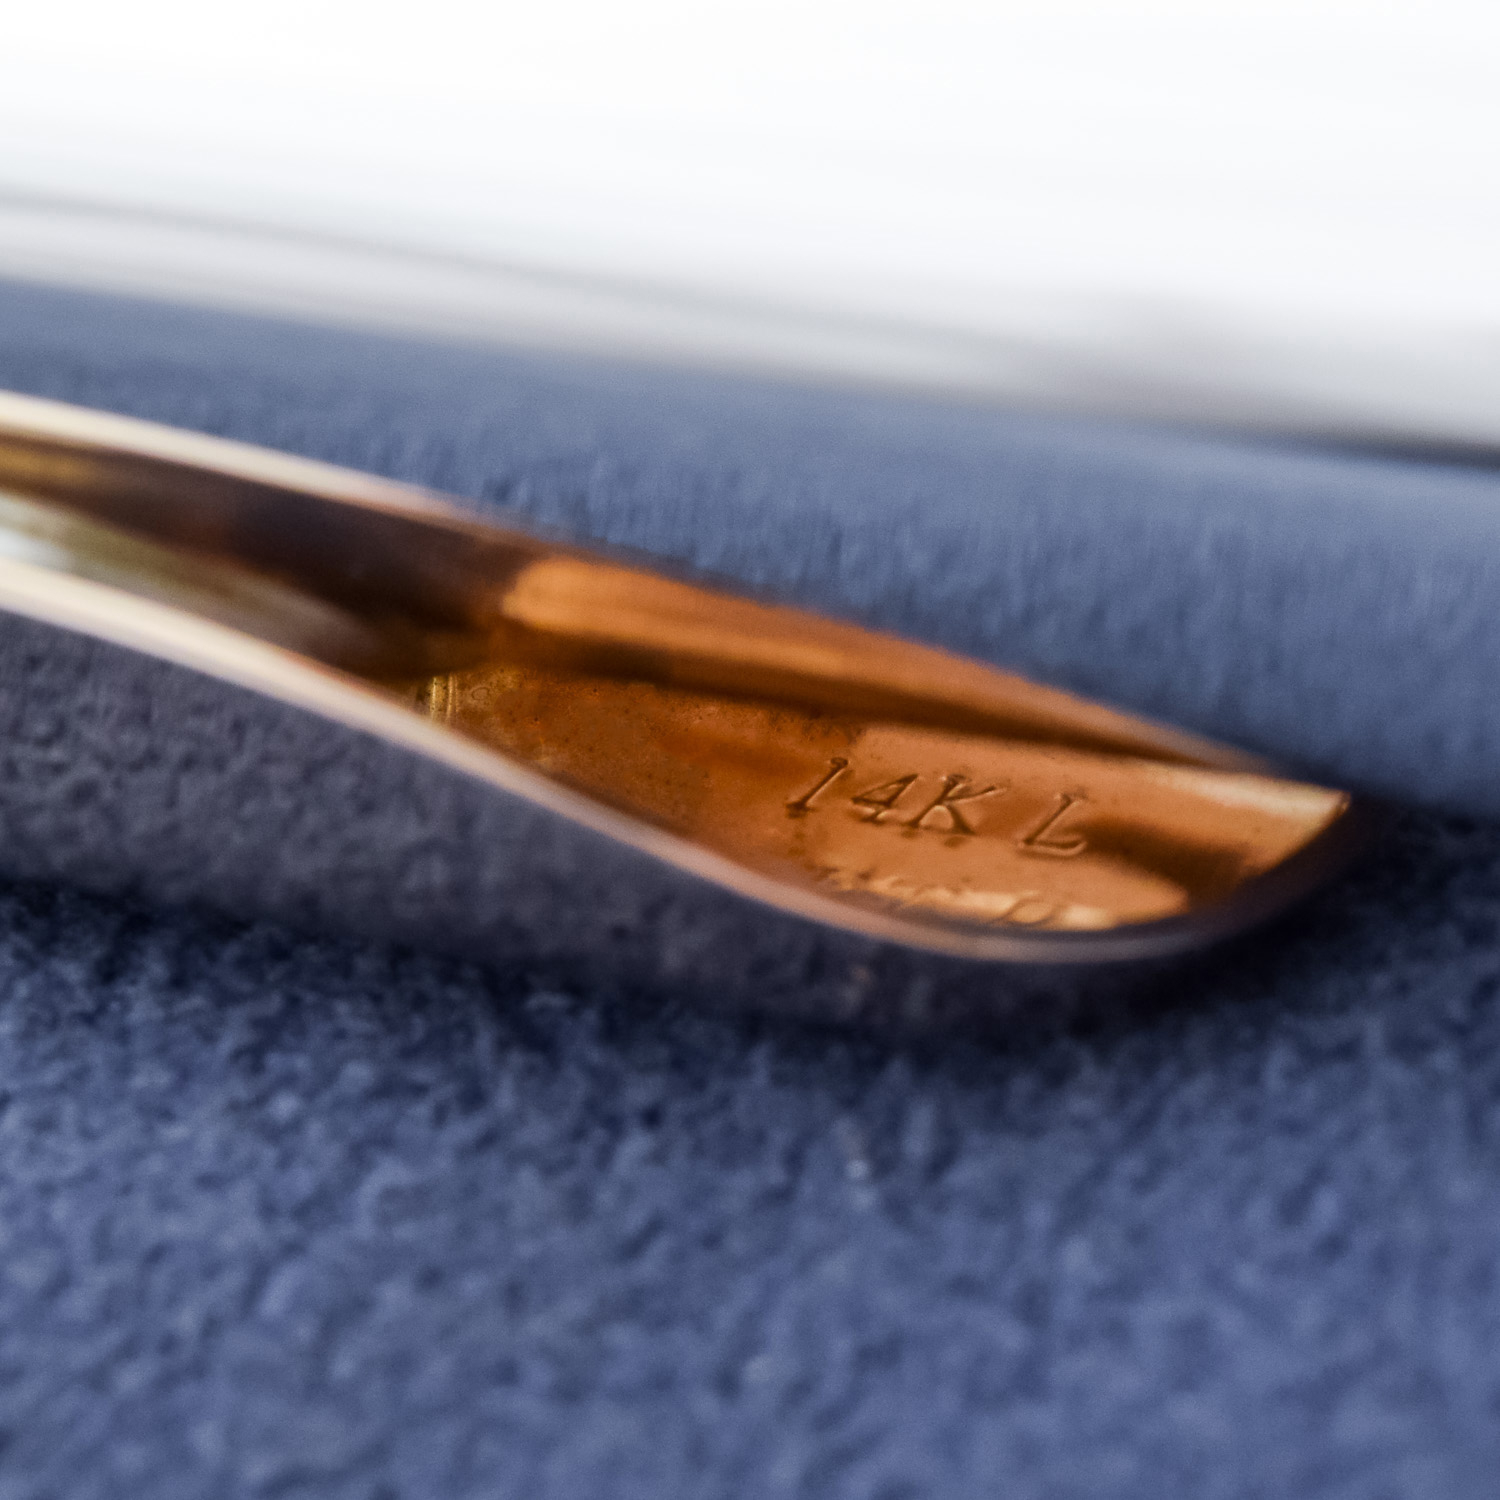 Nagahara Flute Headjoint - Platinum Riser and 14k Gold Lipplate